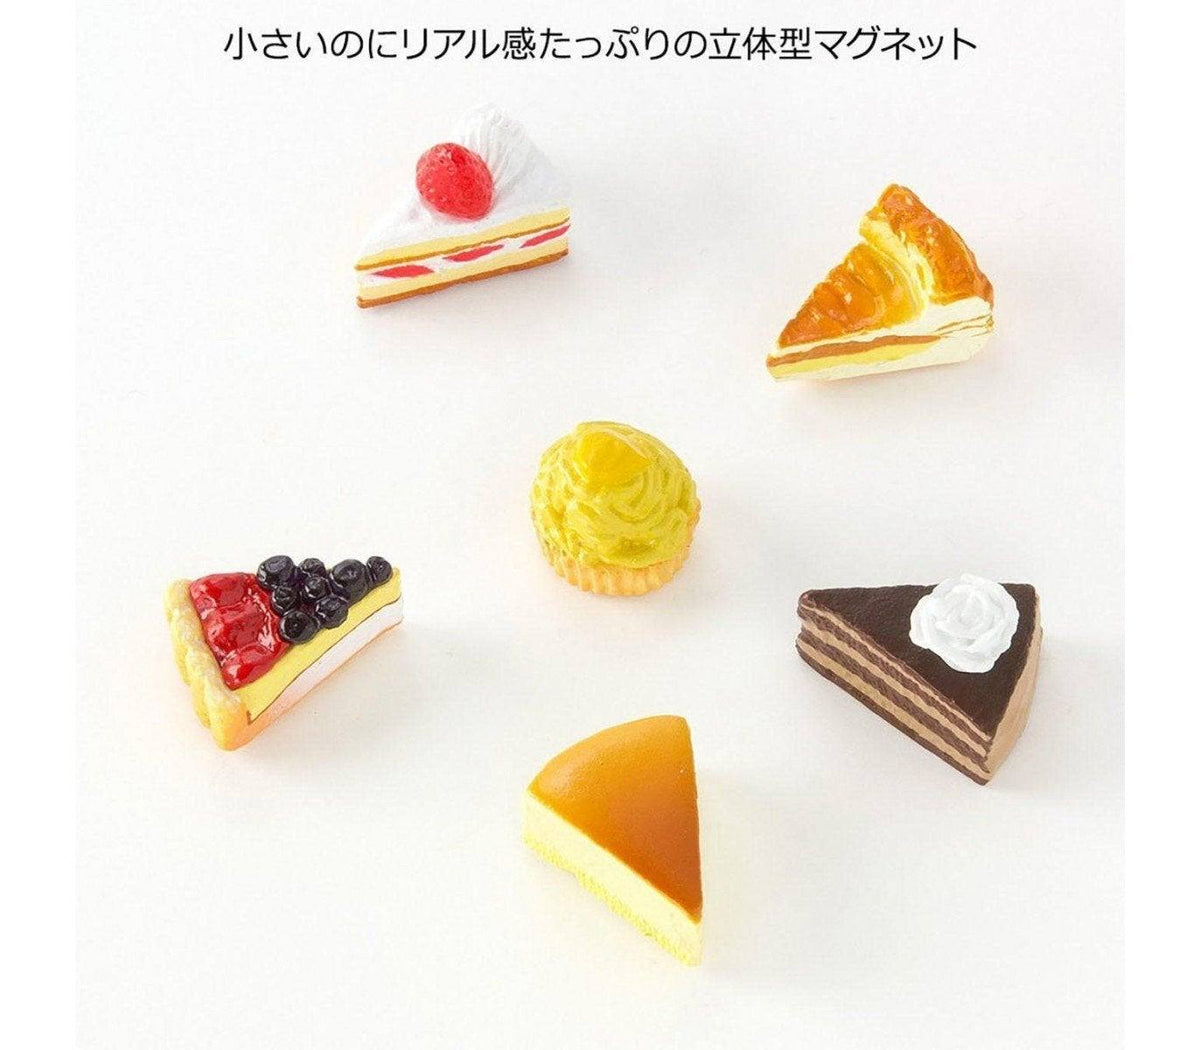 Midori Mini Magnet Cake - Todo Modo